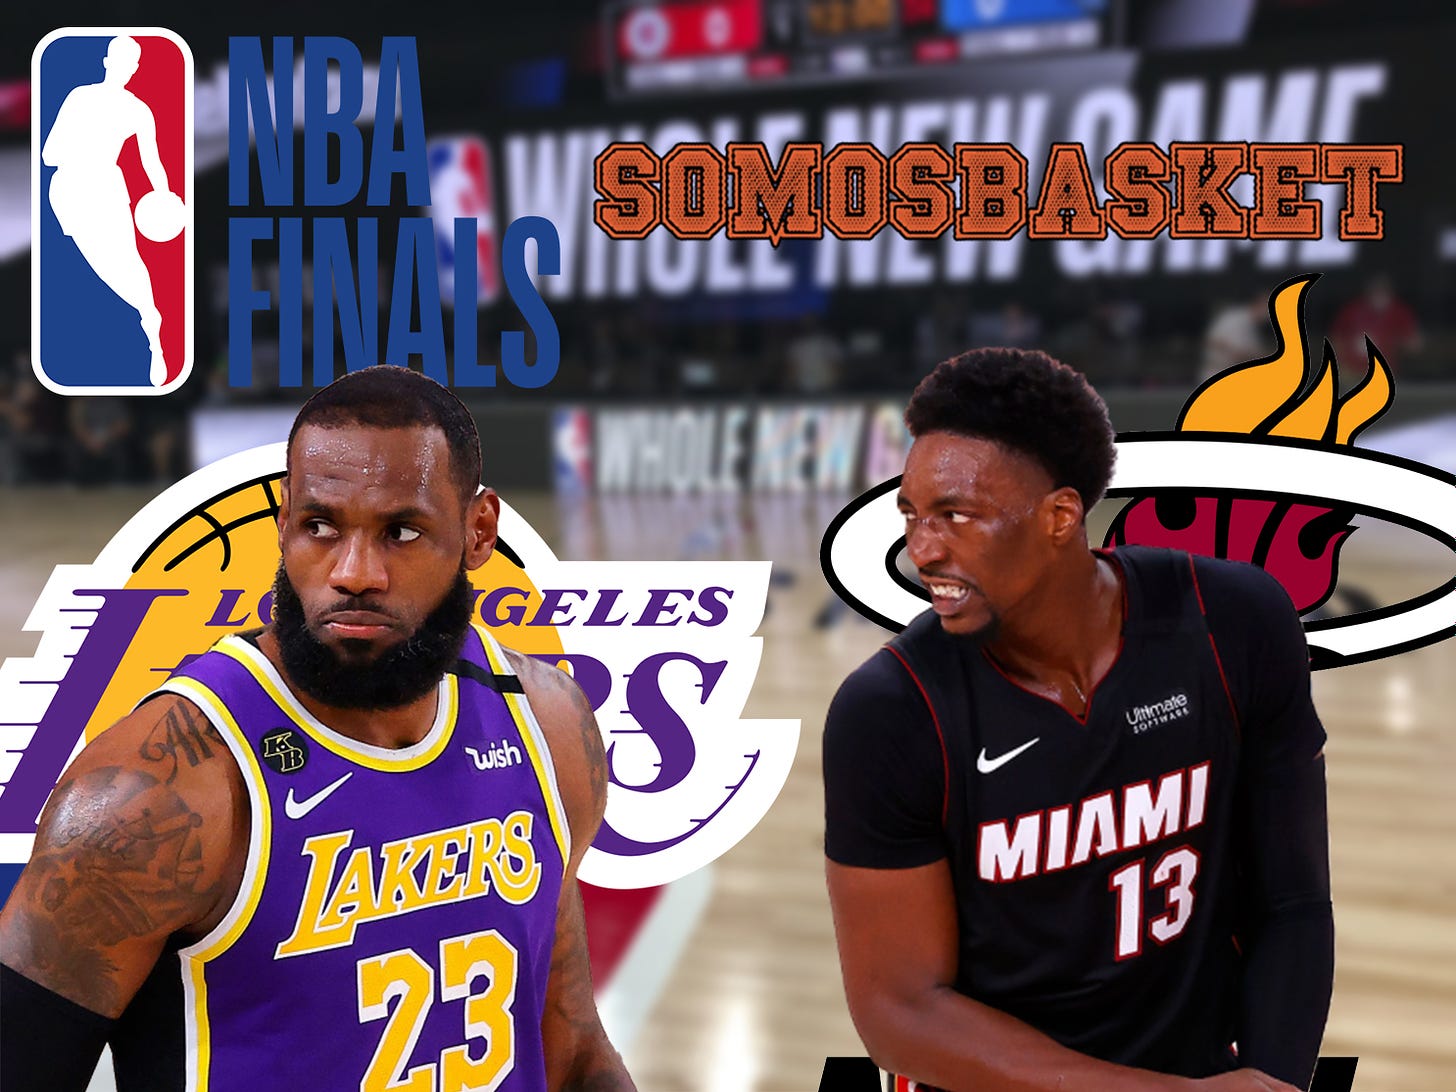 Previa Finales 2020-21 | Los Ángeles Lakers vs Miami Heat